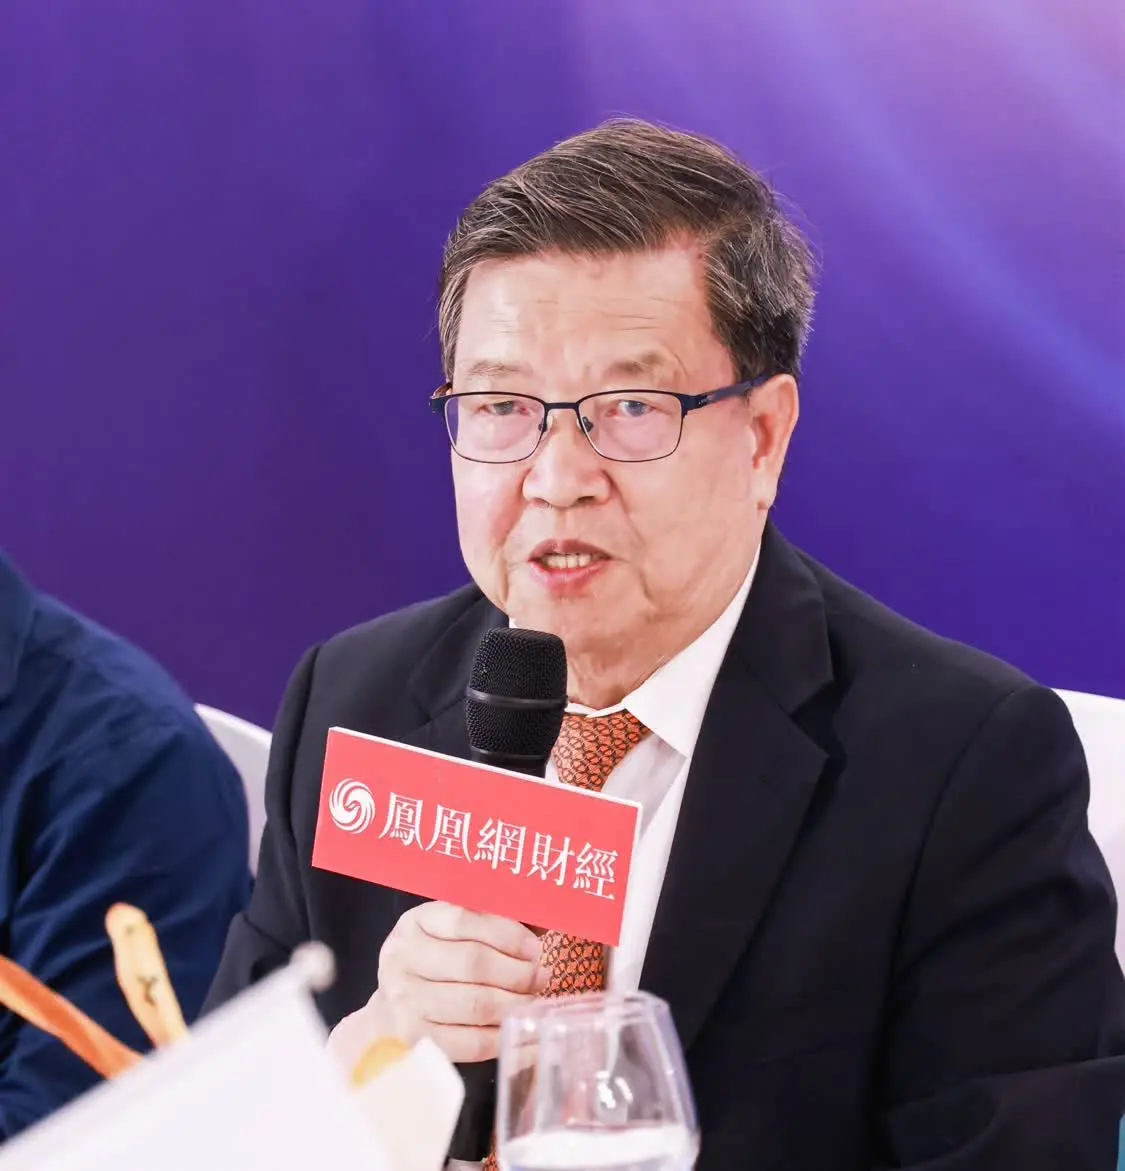 中国入世谈判首席代表、原国家外经贸部副部长龙永图